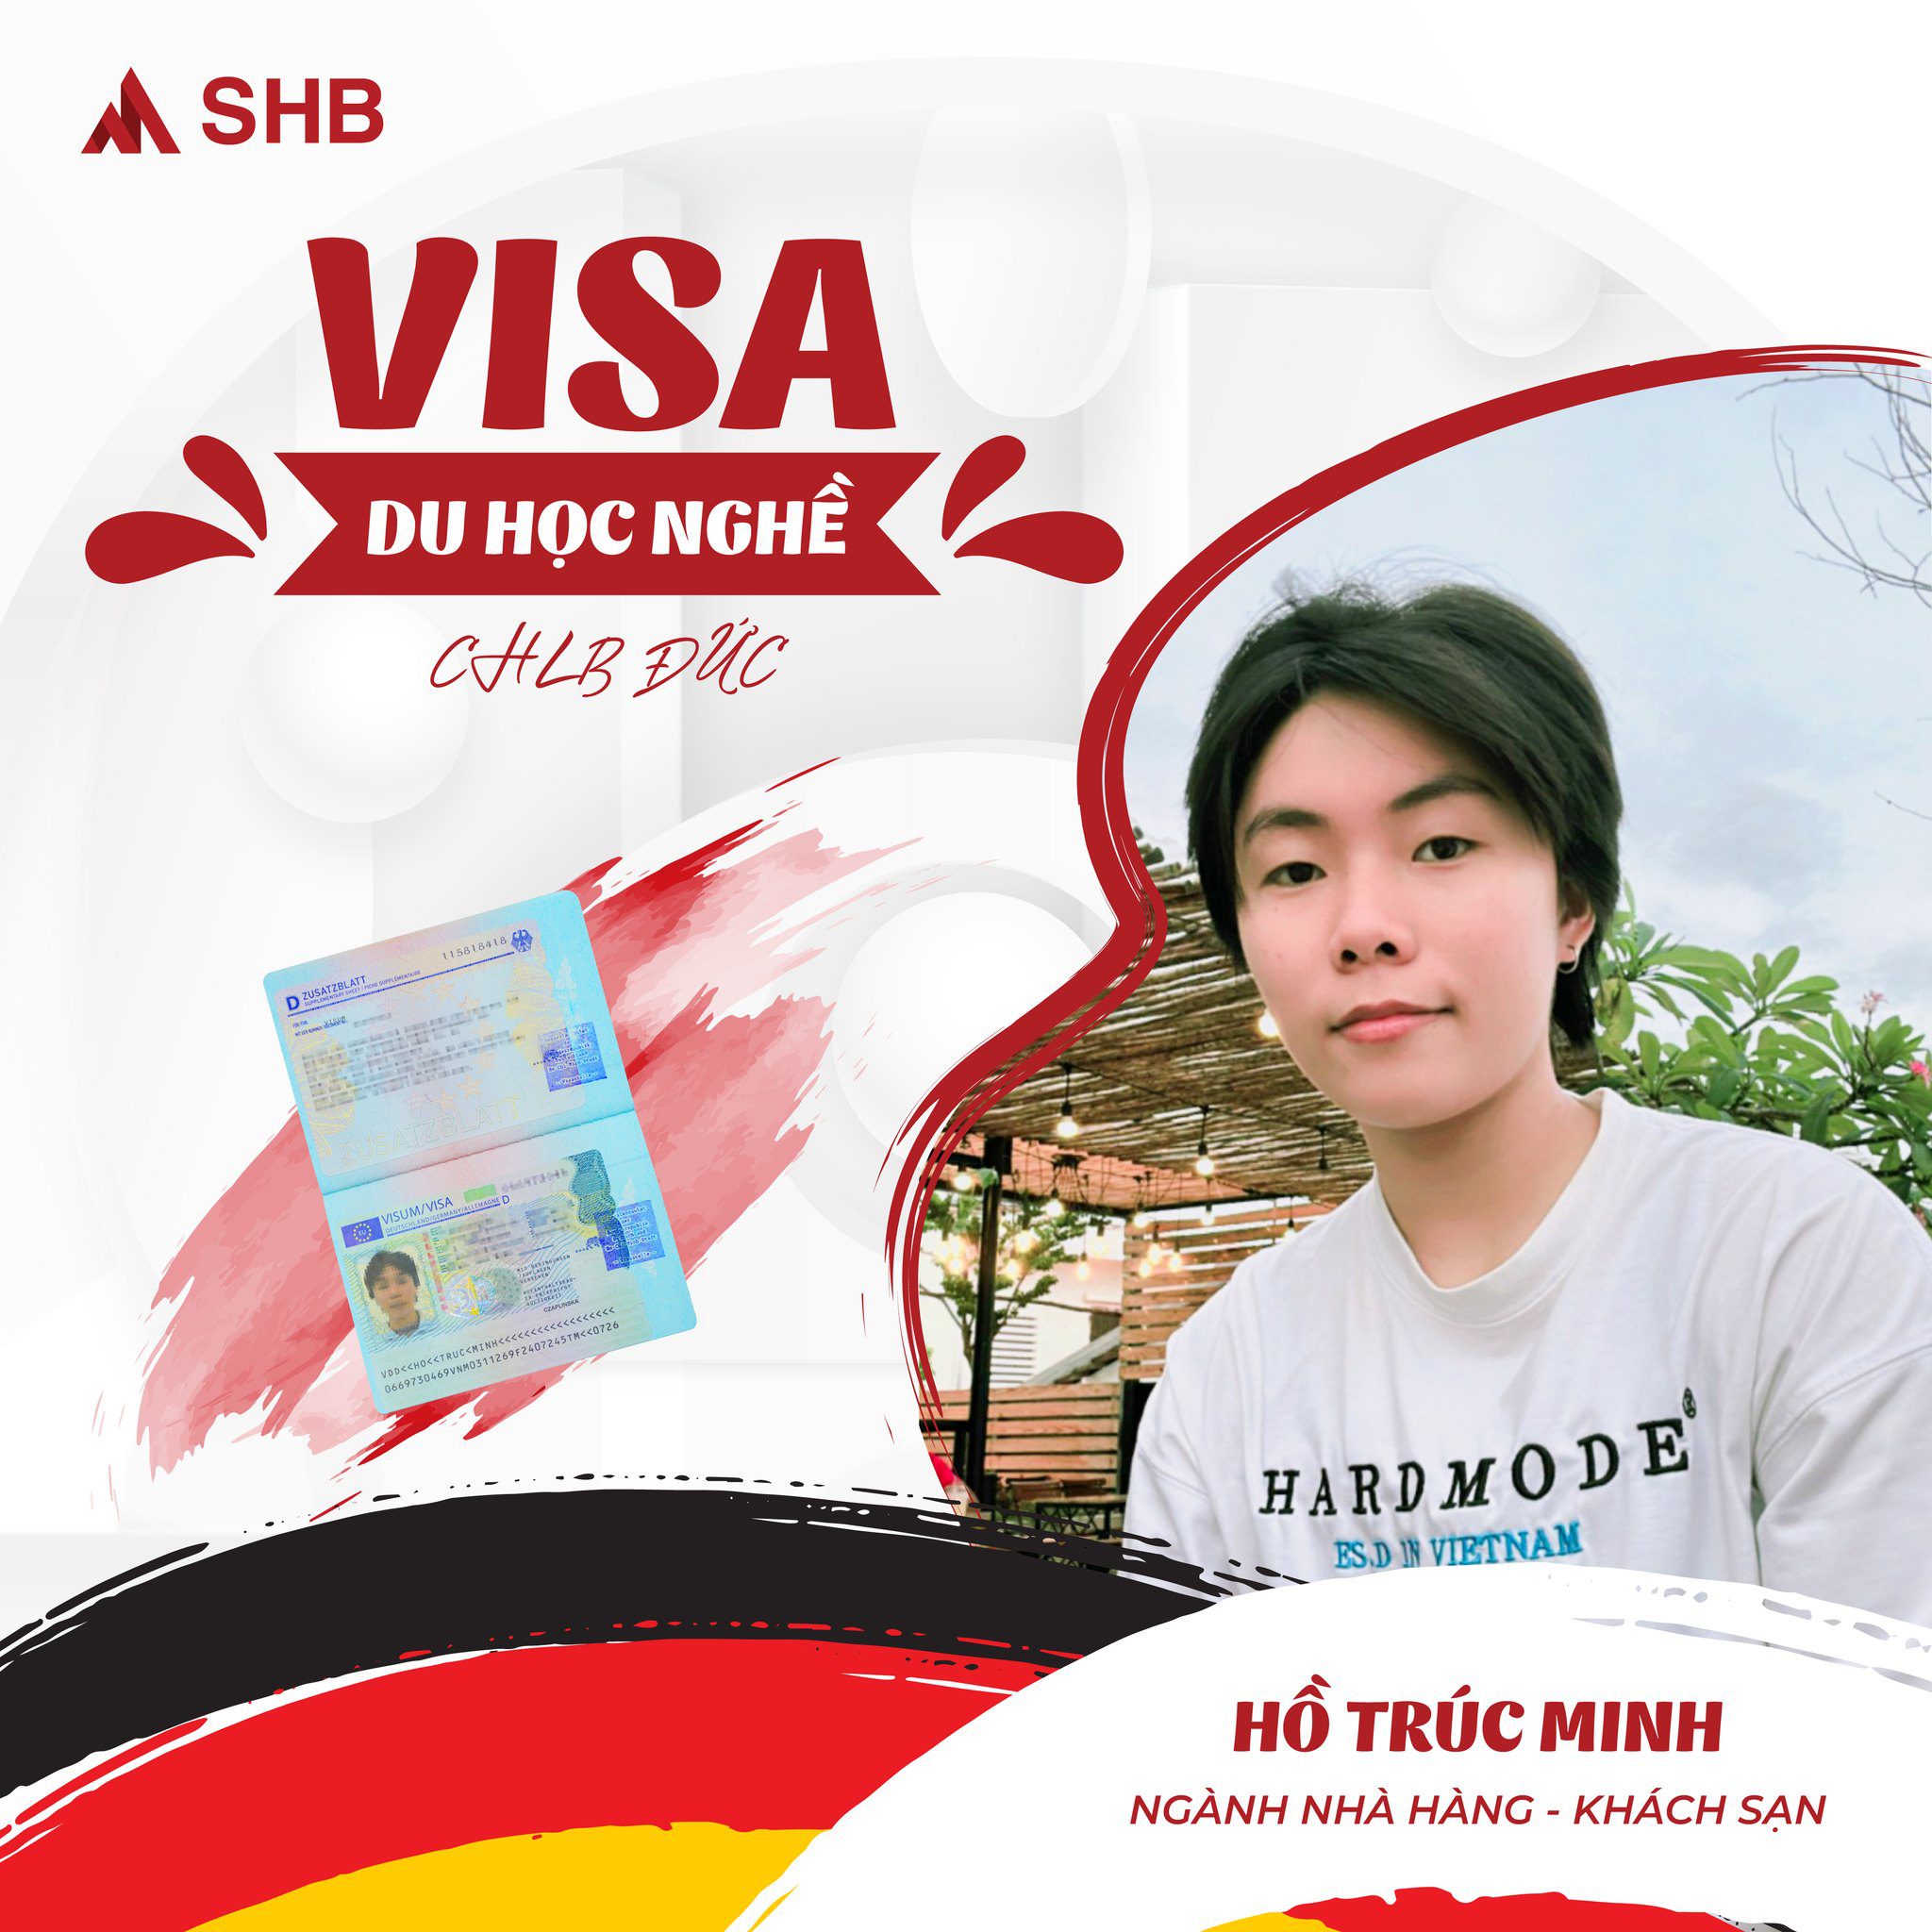 Visa Du Học Nghề đức Shb 08 (3)